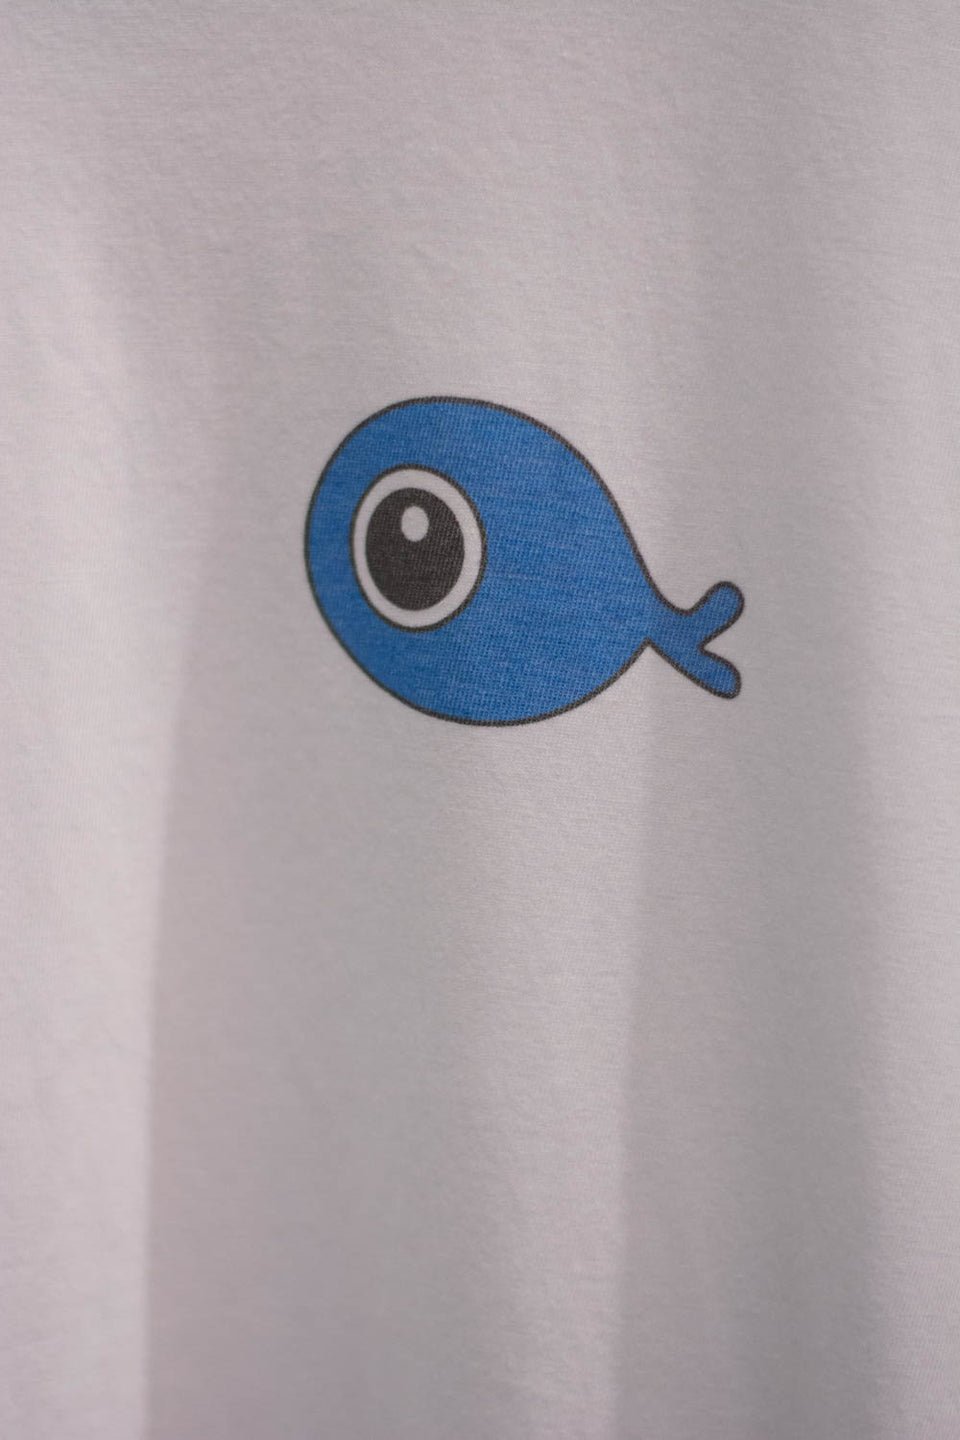 I saved the fish - Fishtee - T-shirt